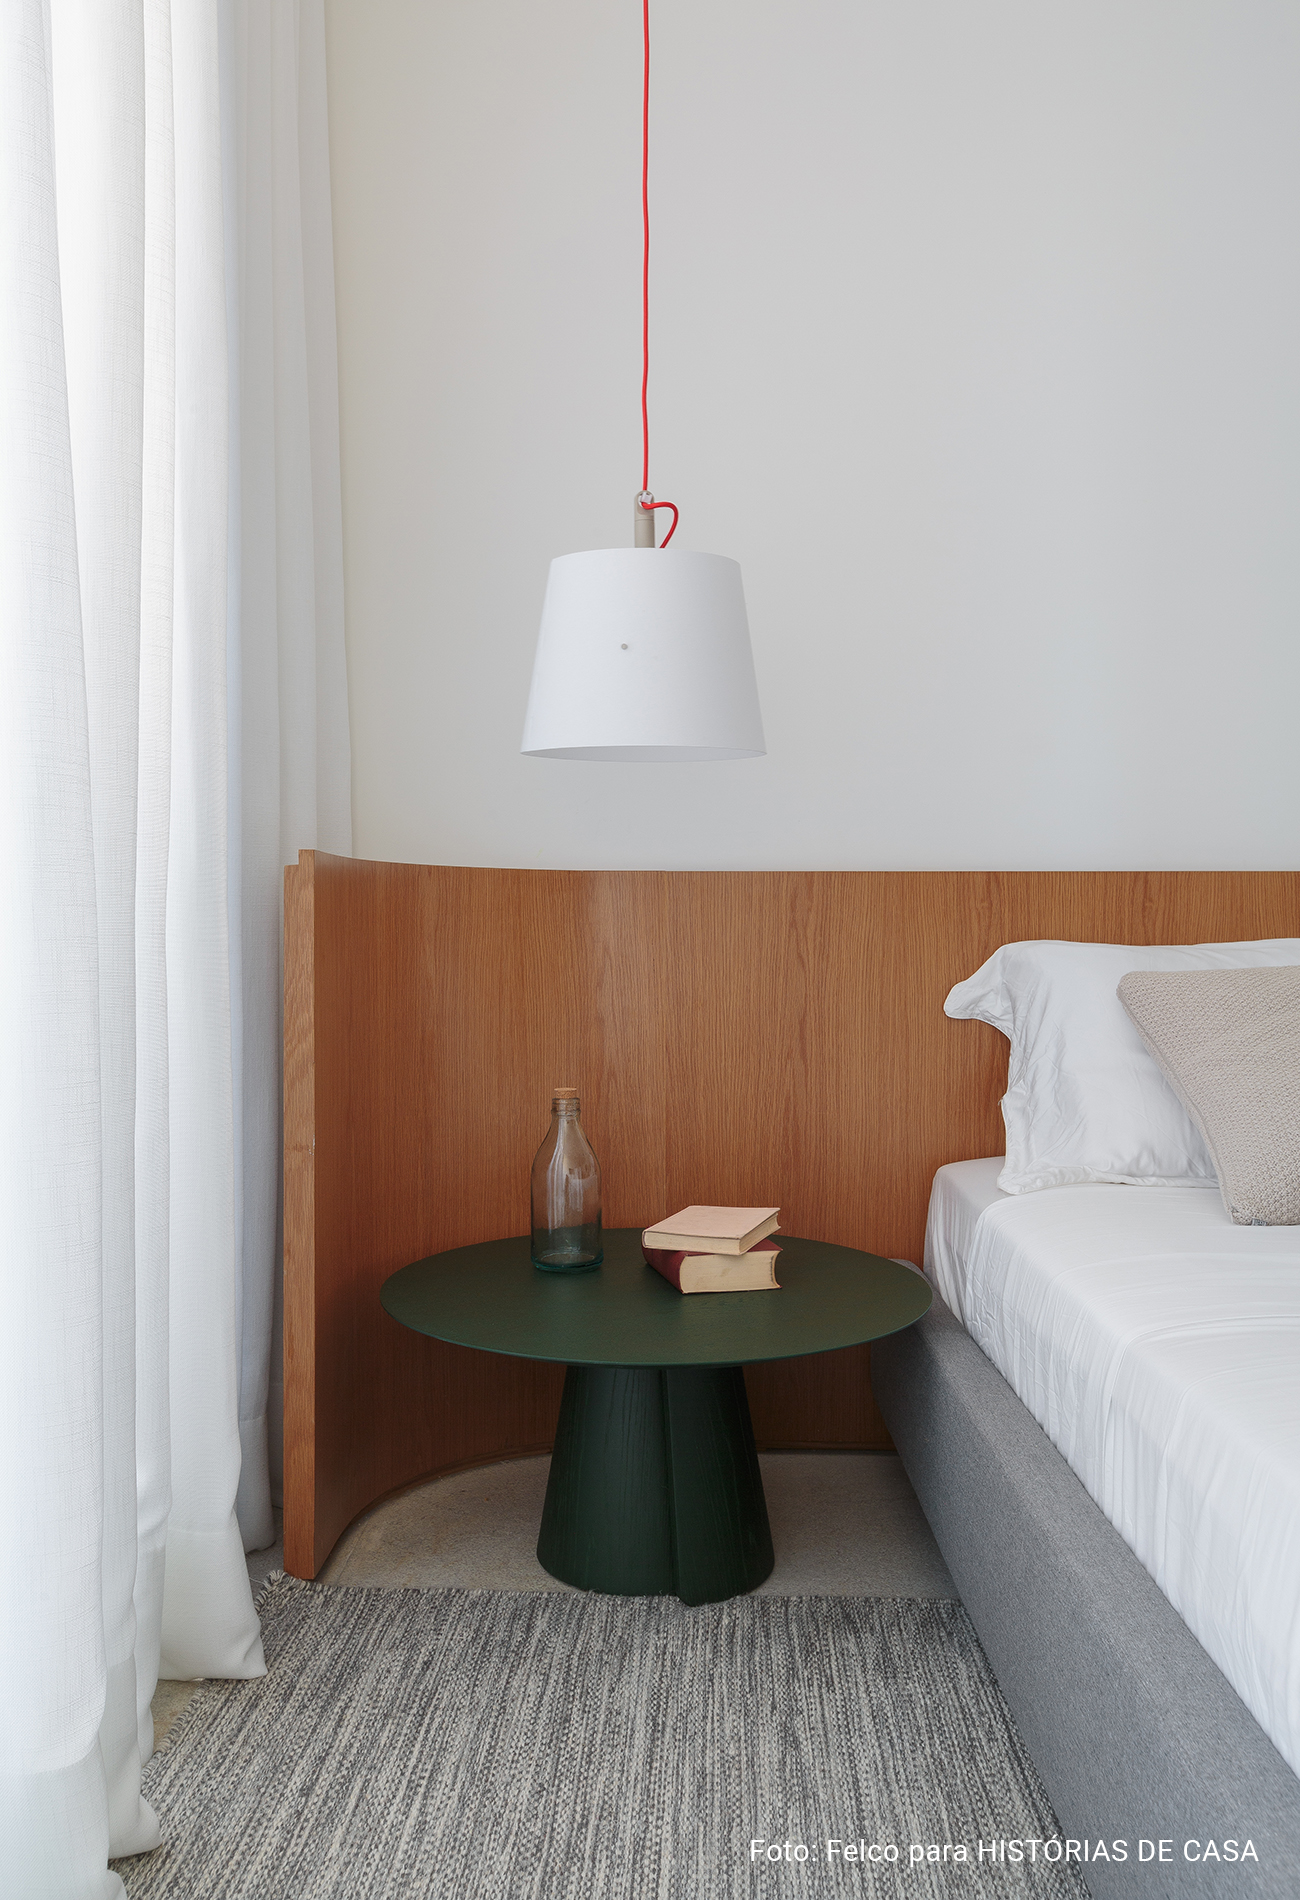 Decorado Oscar da Idea!Zarvos tem decoração minimalista com tons neutros e sala ampla.